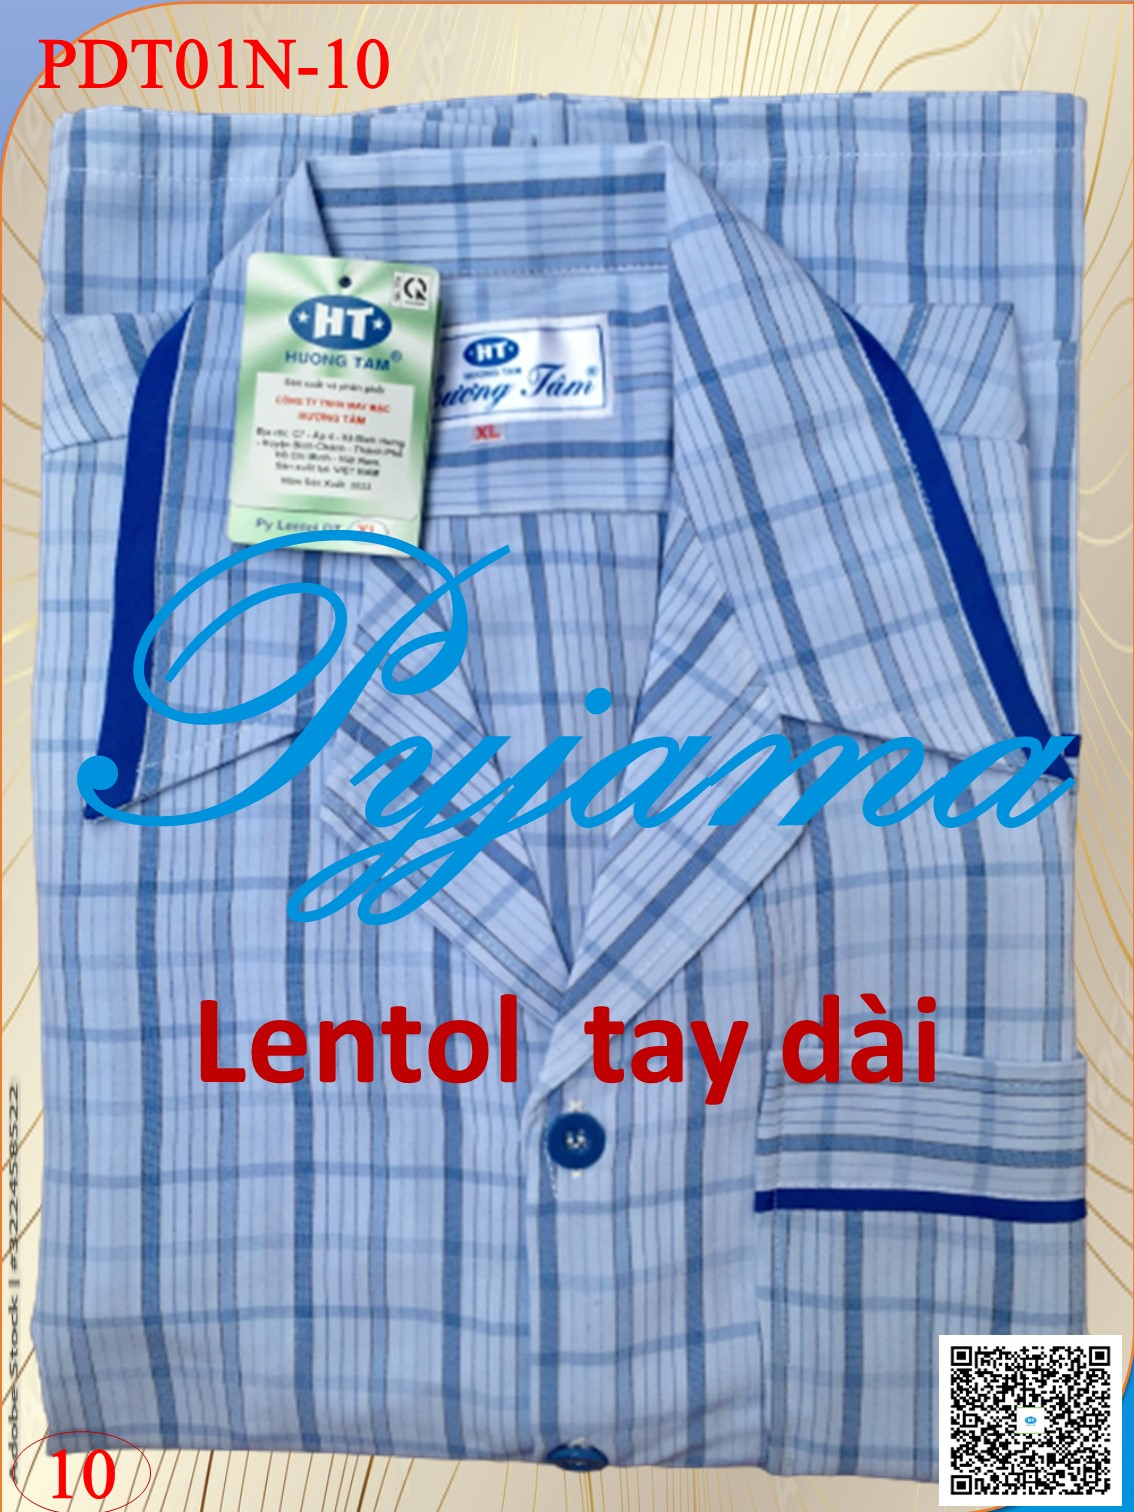 Bộ Pyjama HUONGTAM Lentol tay dài  nam cao cấp(PDT01N). Chất liệu vải Lentol loại tốt:  mềm mại, thoáng mát, không phai màu